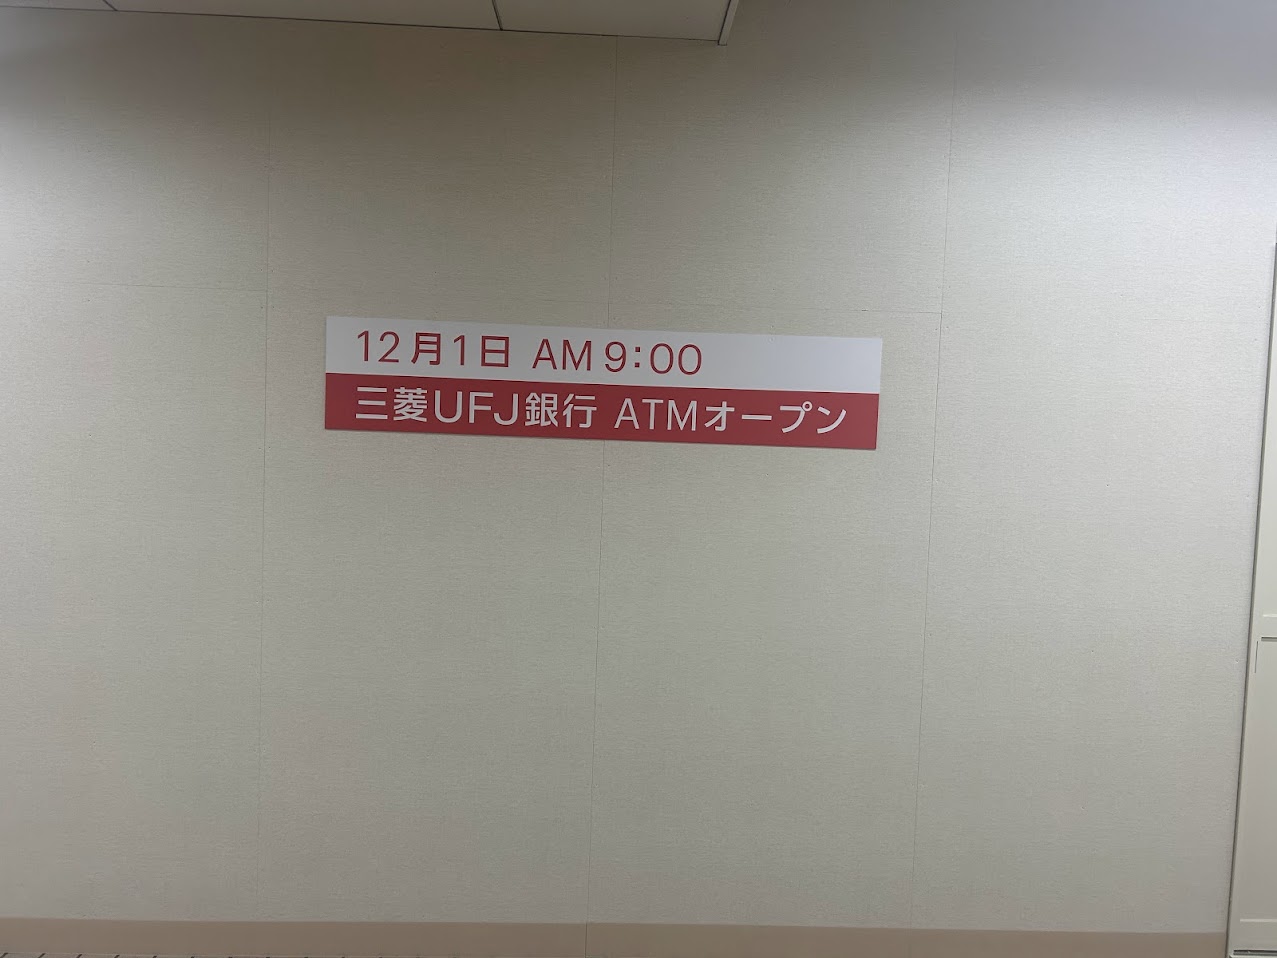 大阪メトロ谷町線出戸駅構内三菱UFJ銀行ATMオープン予定地3